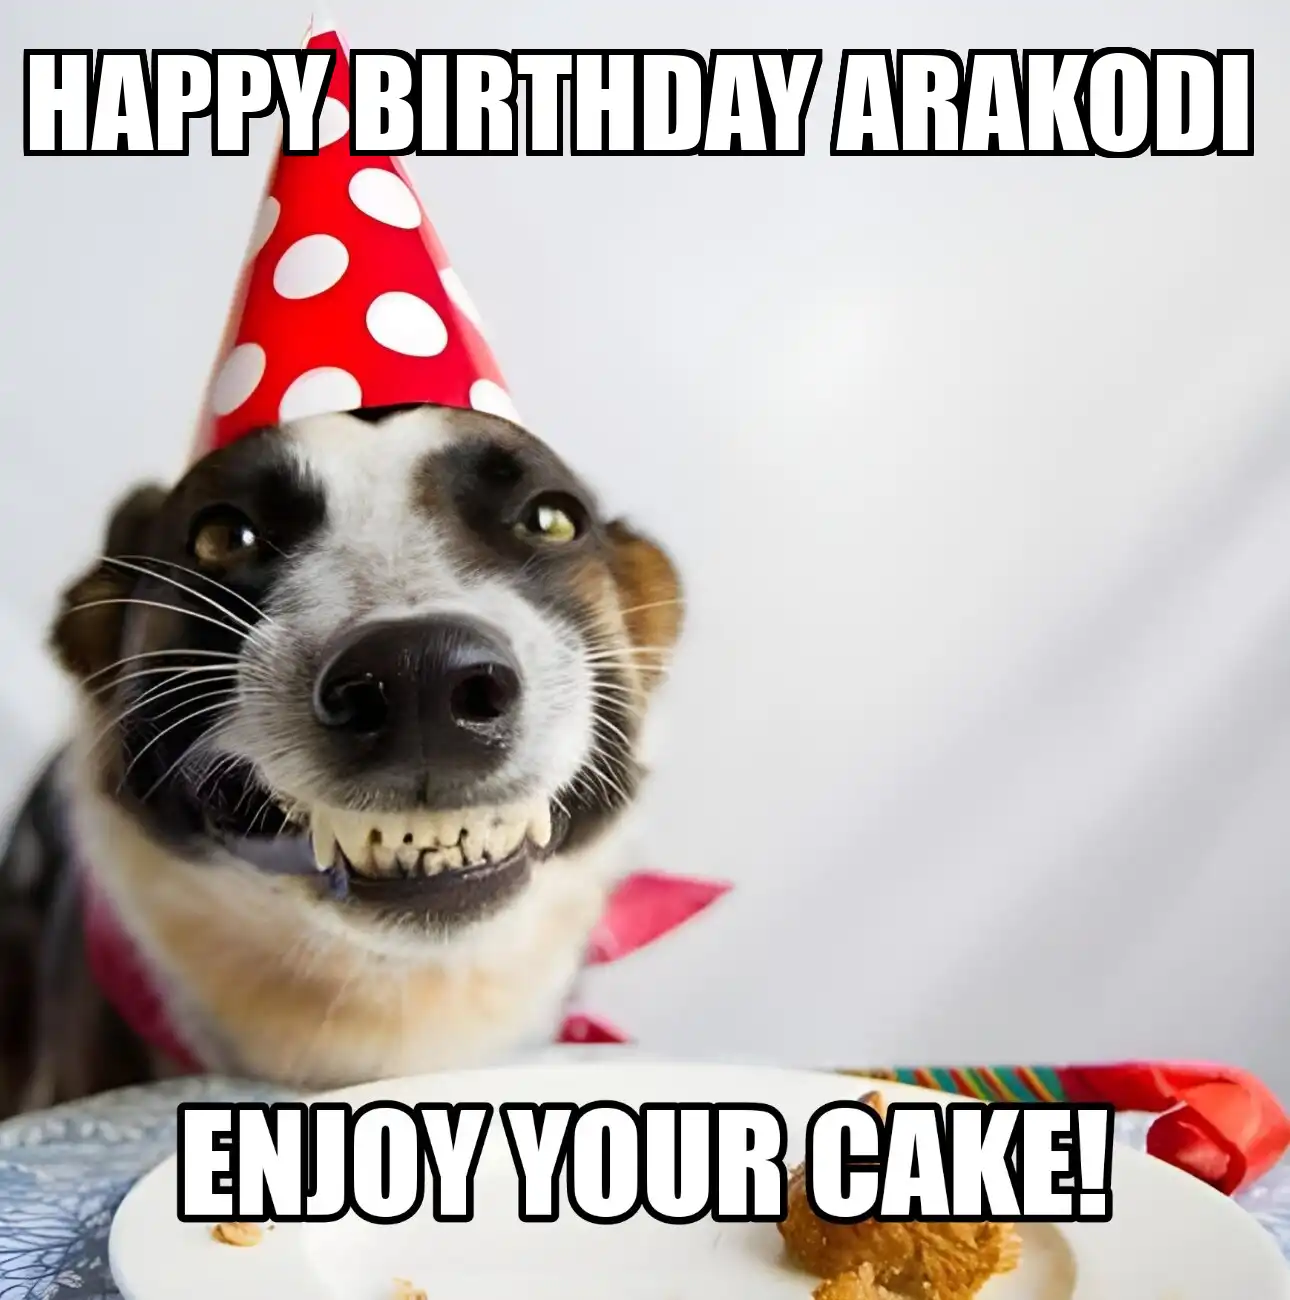 Happy Birthday Arakodi Enjoy Your Cake Dog Meme